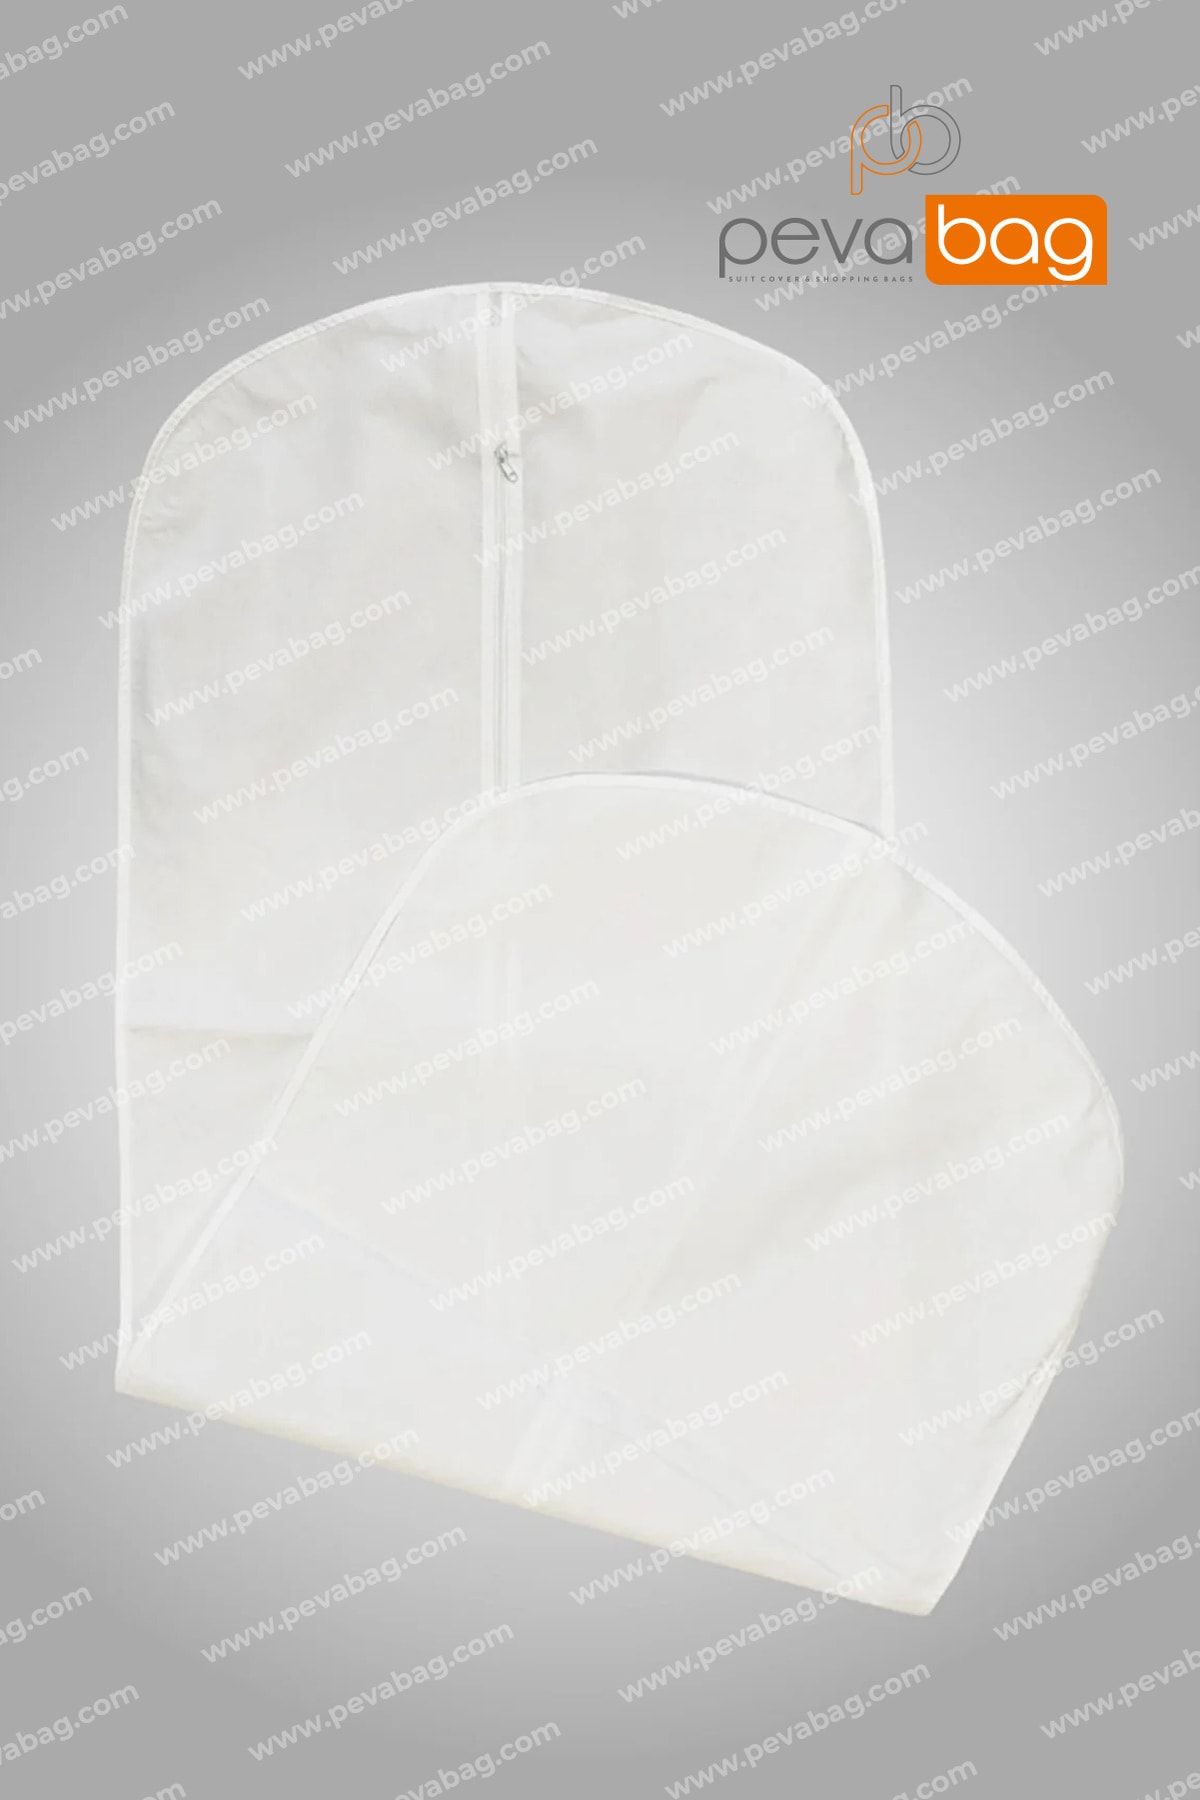 Pevabag Abiye Elbise Kılıfı (GAMBOÇ) 5 Adet / 60x150 Cm Beyaz 50 gr